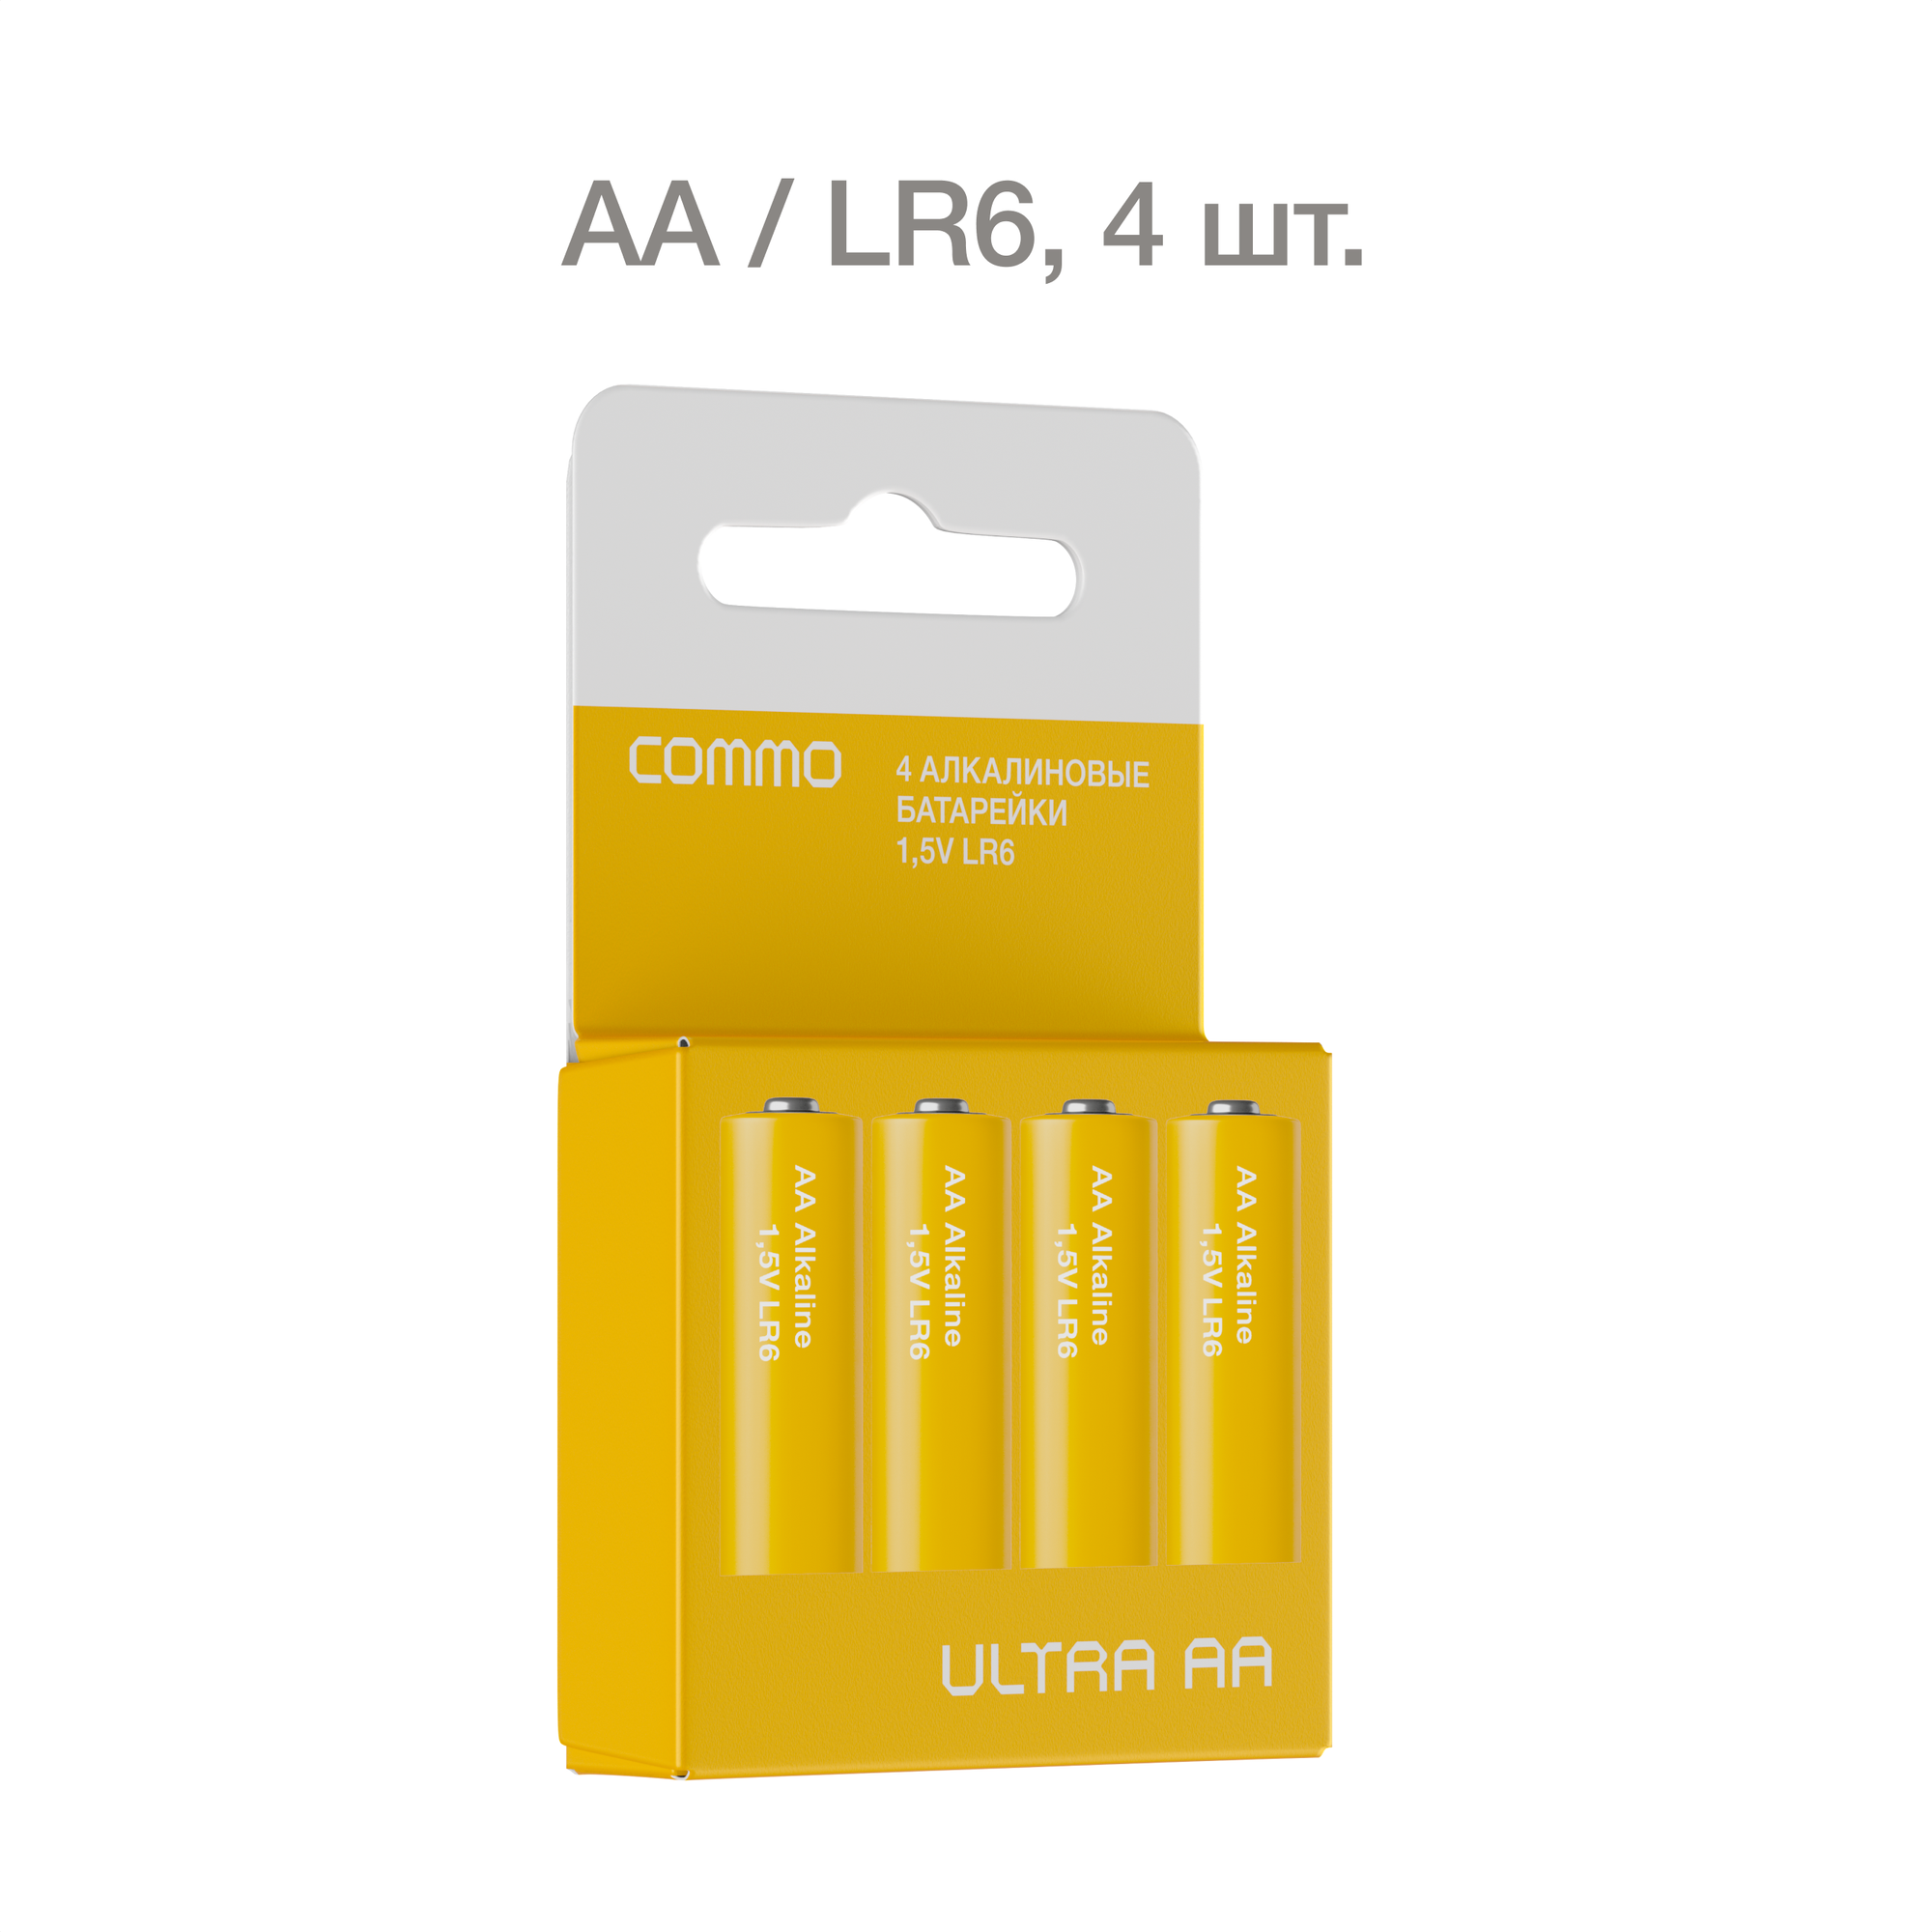 Батарейка COMMO Ultra Alkaline AA